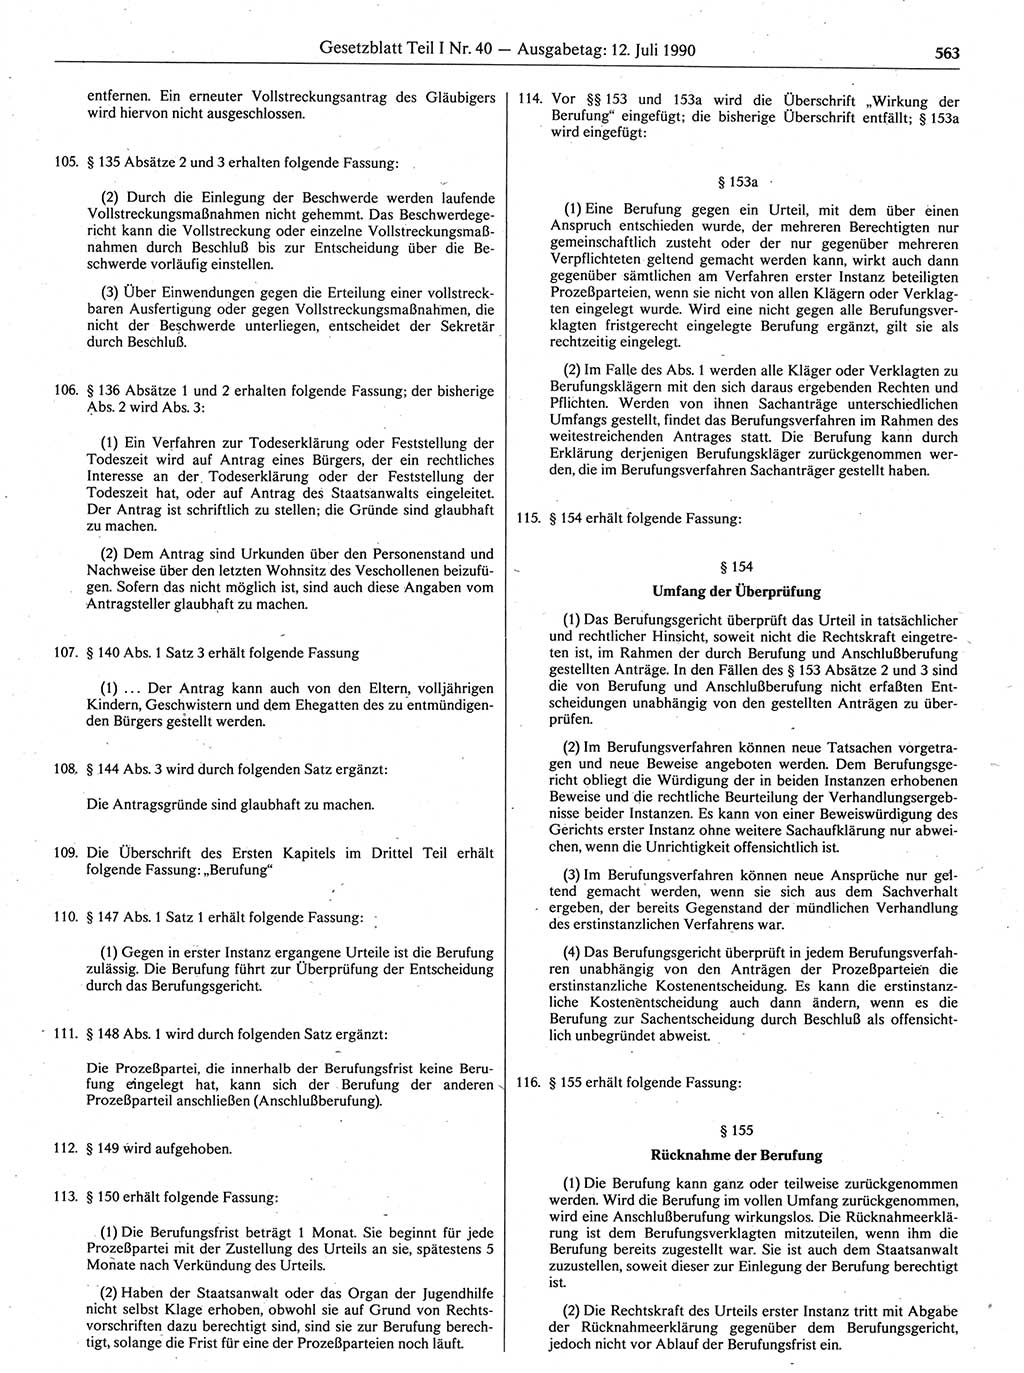 Gesetzblatt (GBl.) der Deutschen Demokratischen Republik (DDR) Teil Ⅰ 1990, Seite 563 (GBl. DDR Ⅰ 1990, S. 563)